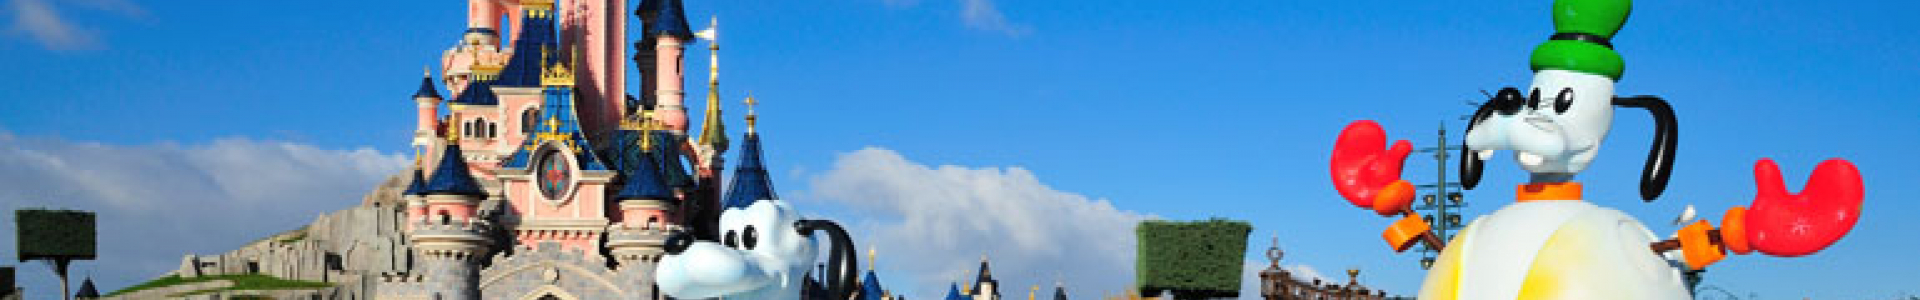 Carrefour spectacles : promos sur les entrées Disneyland Paris®, Parc Astérix, Futuroscope...